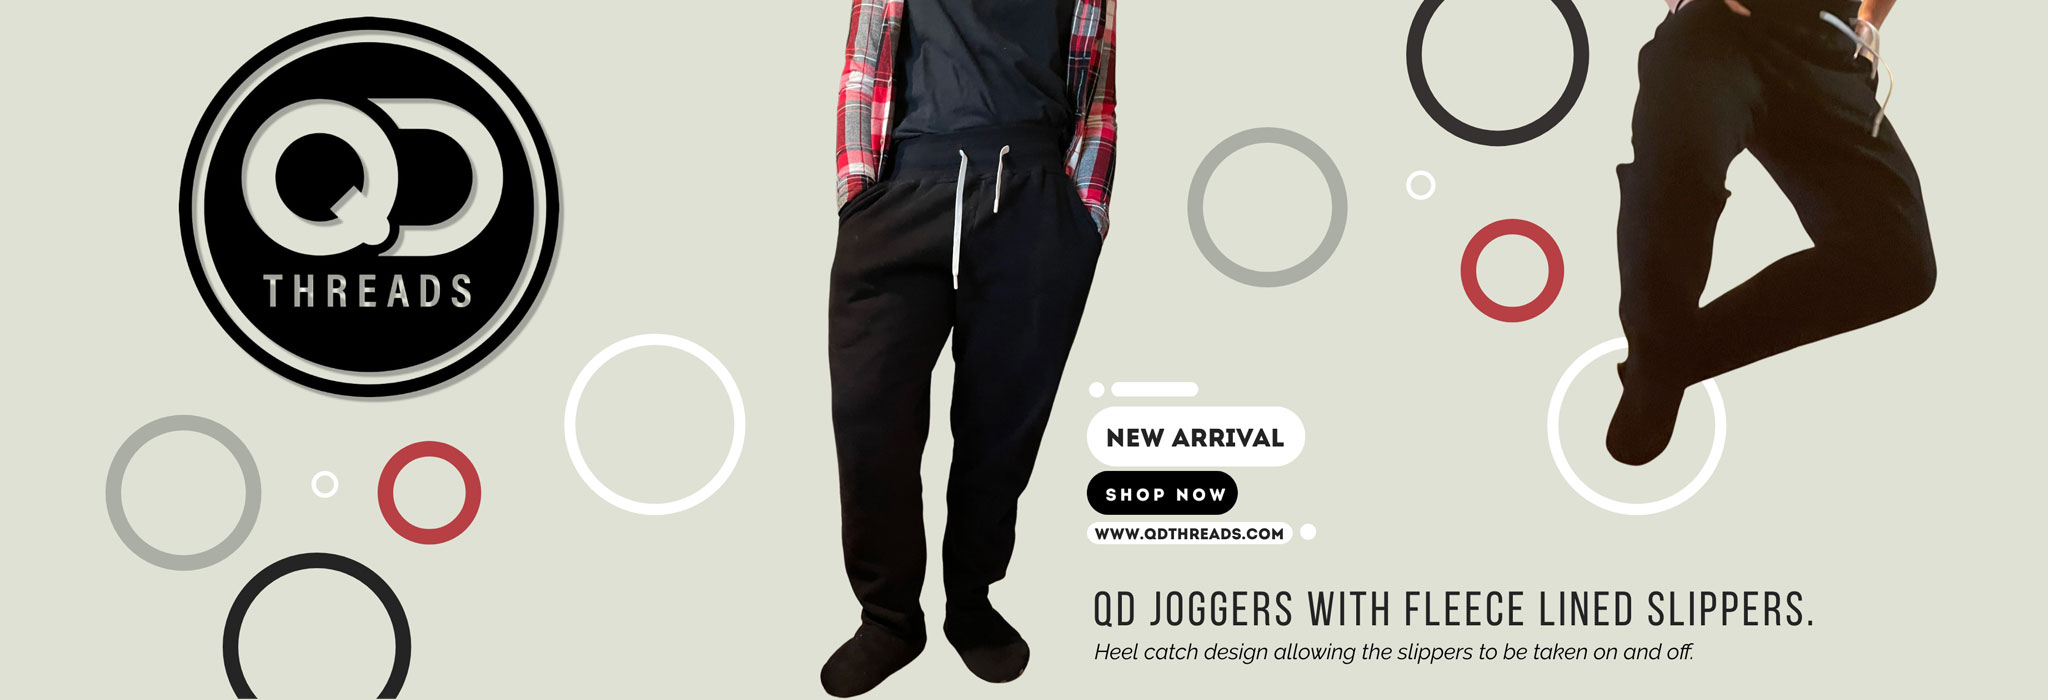 QD Joggers New Arrival